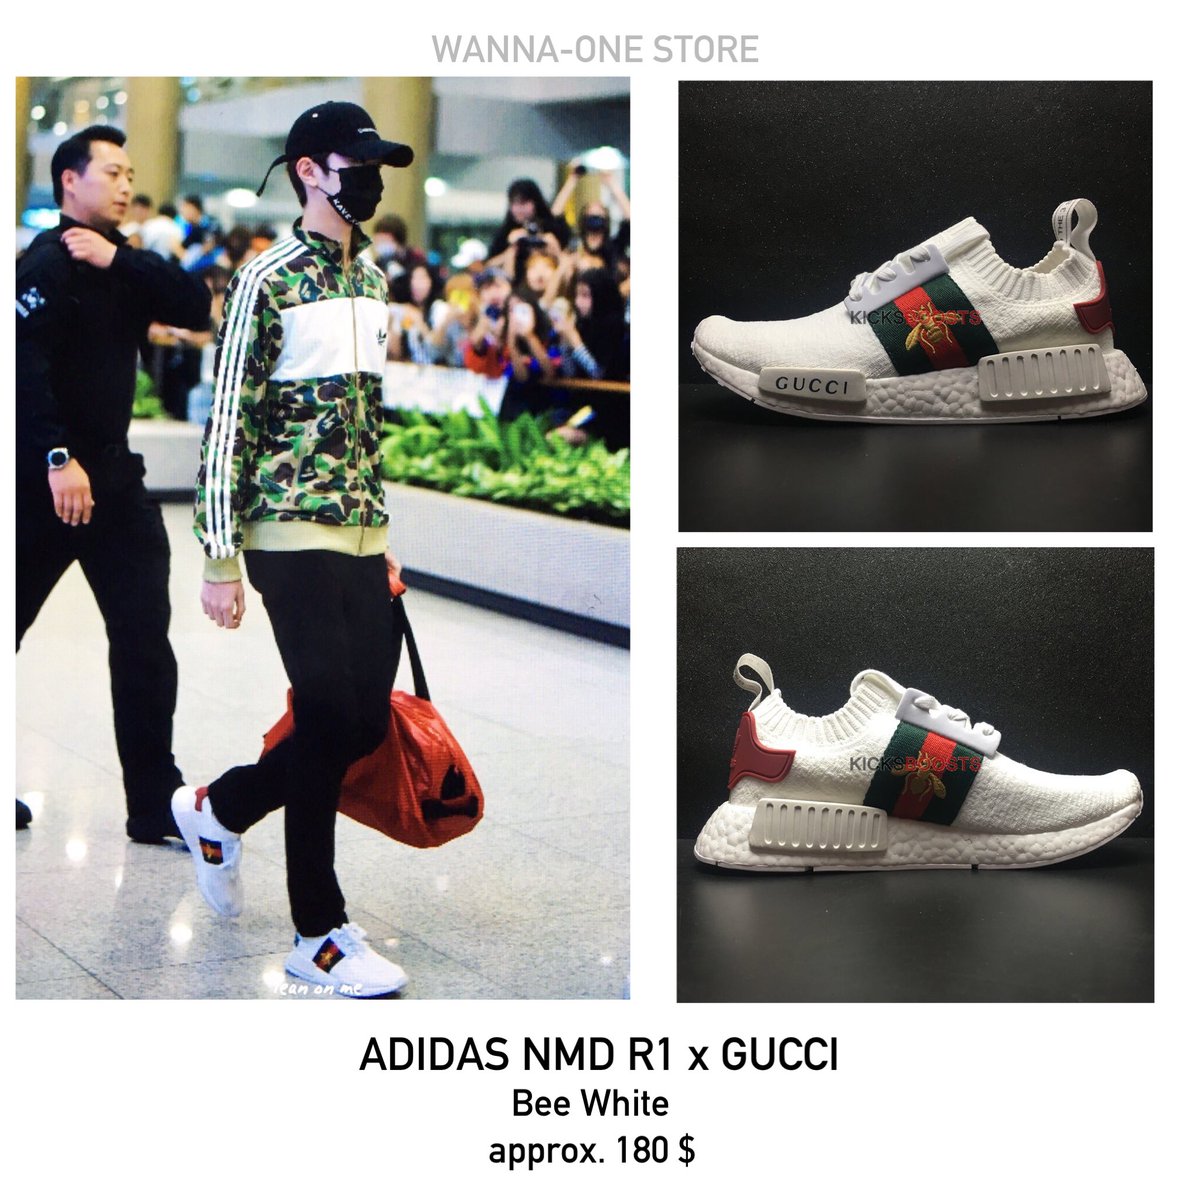 Adidas NMD R1 x Gucci ã ã ¾ è 18 BG186